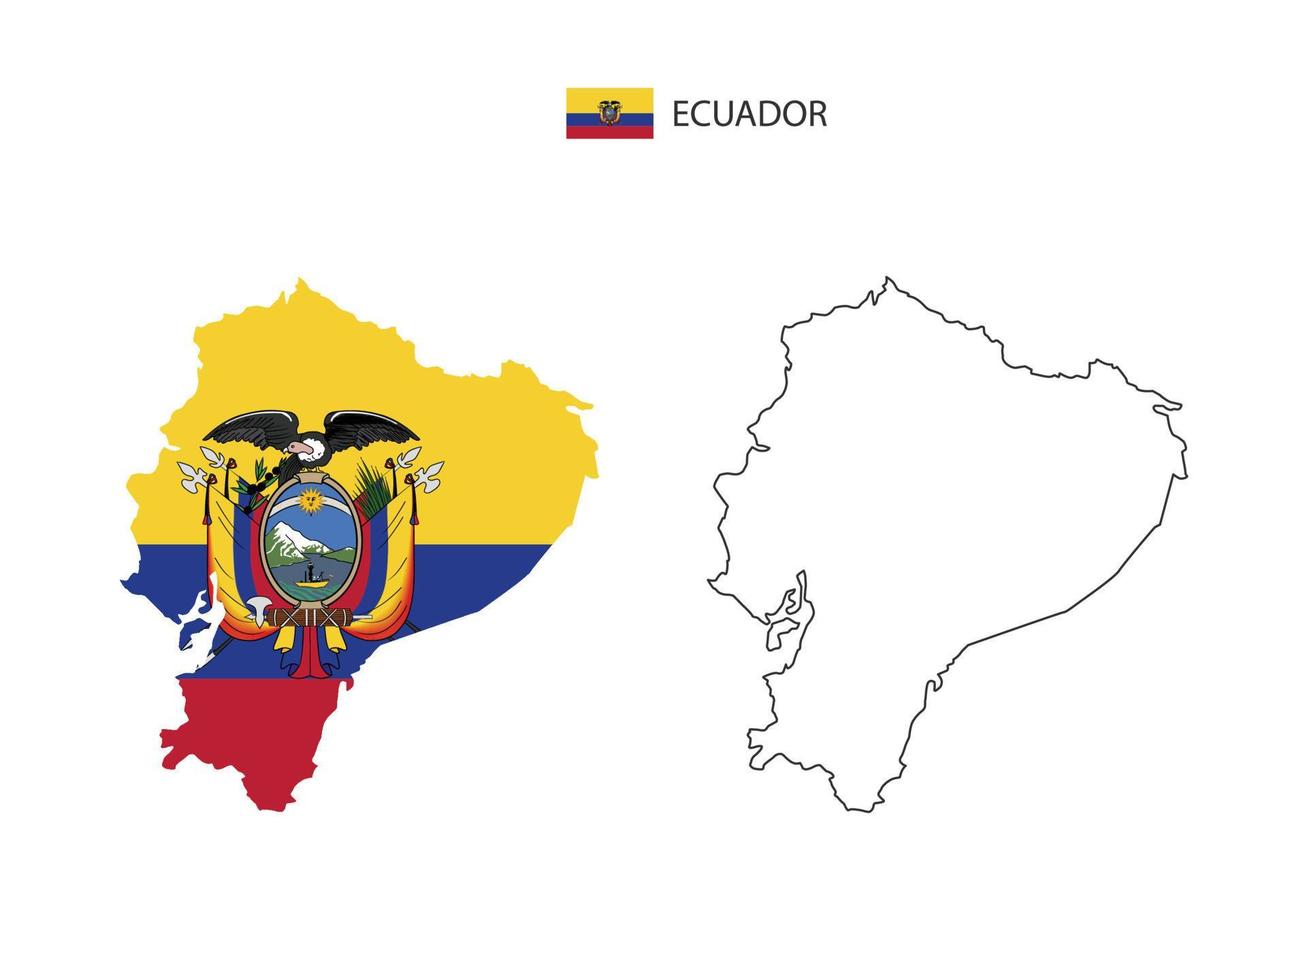 ecuador-karte stadtvektor geteilt durch umriss-einfachheitsstil. haben 2 Versionen, eine schwarze Version mit dünner Linie und eine Version in der Farbe der Landesflagge. beide Karten waren auf dem weißen Hintergrund. vektor